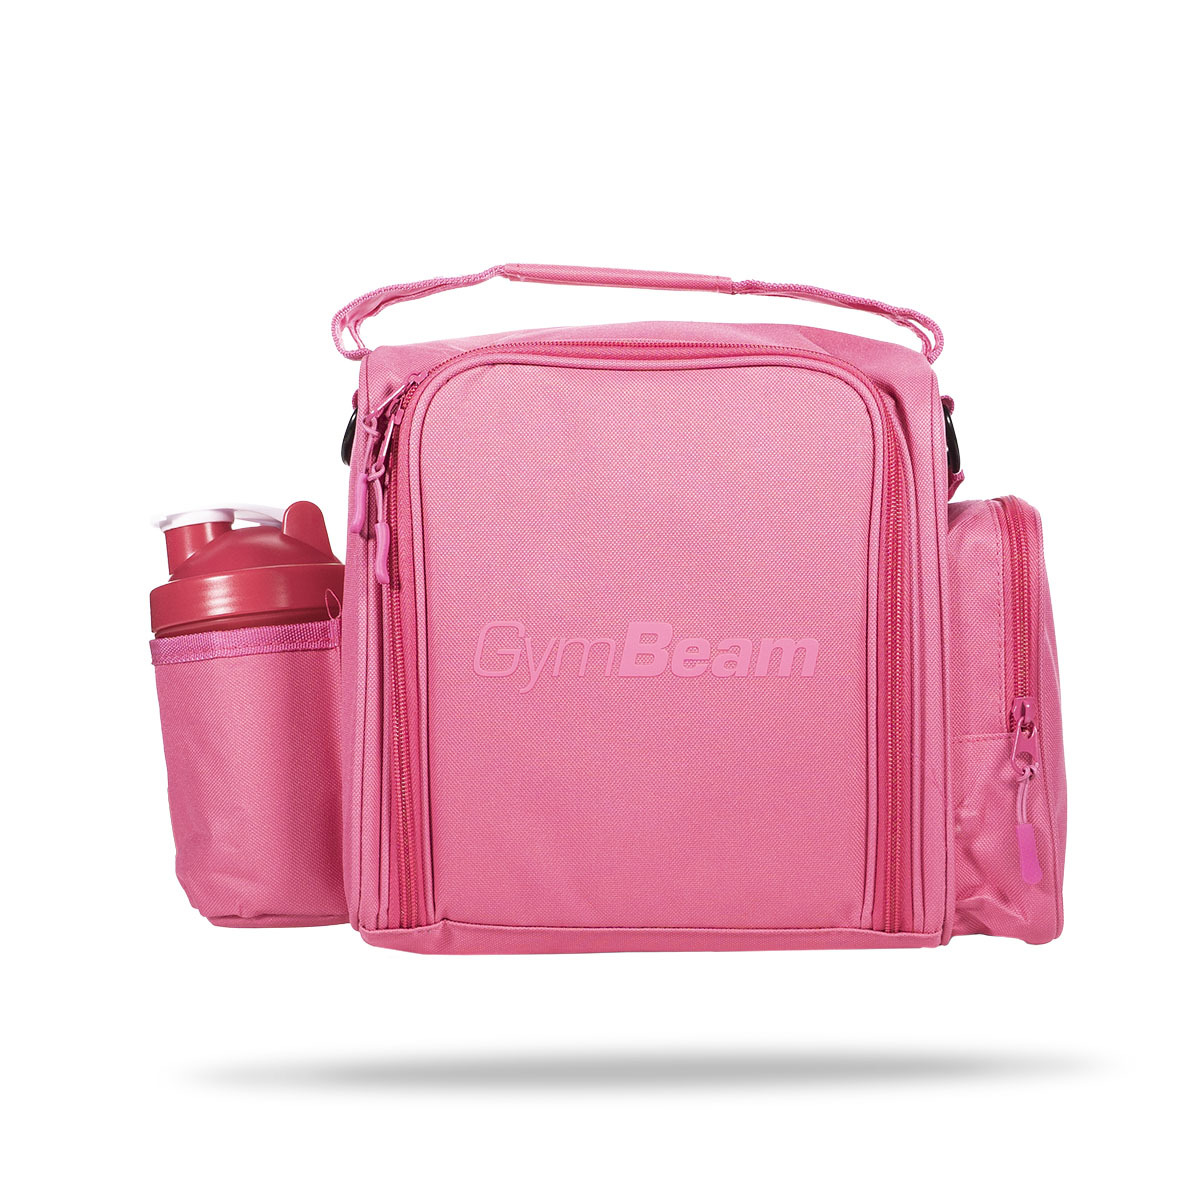 https://gymbeam.com/media/catalog/product/m/e/meal-prep-bag-fit-pink-gymbeam_1_.jpg